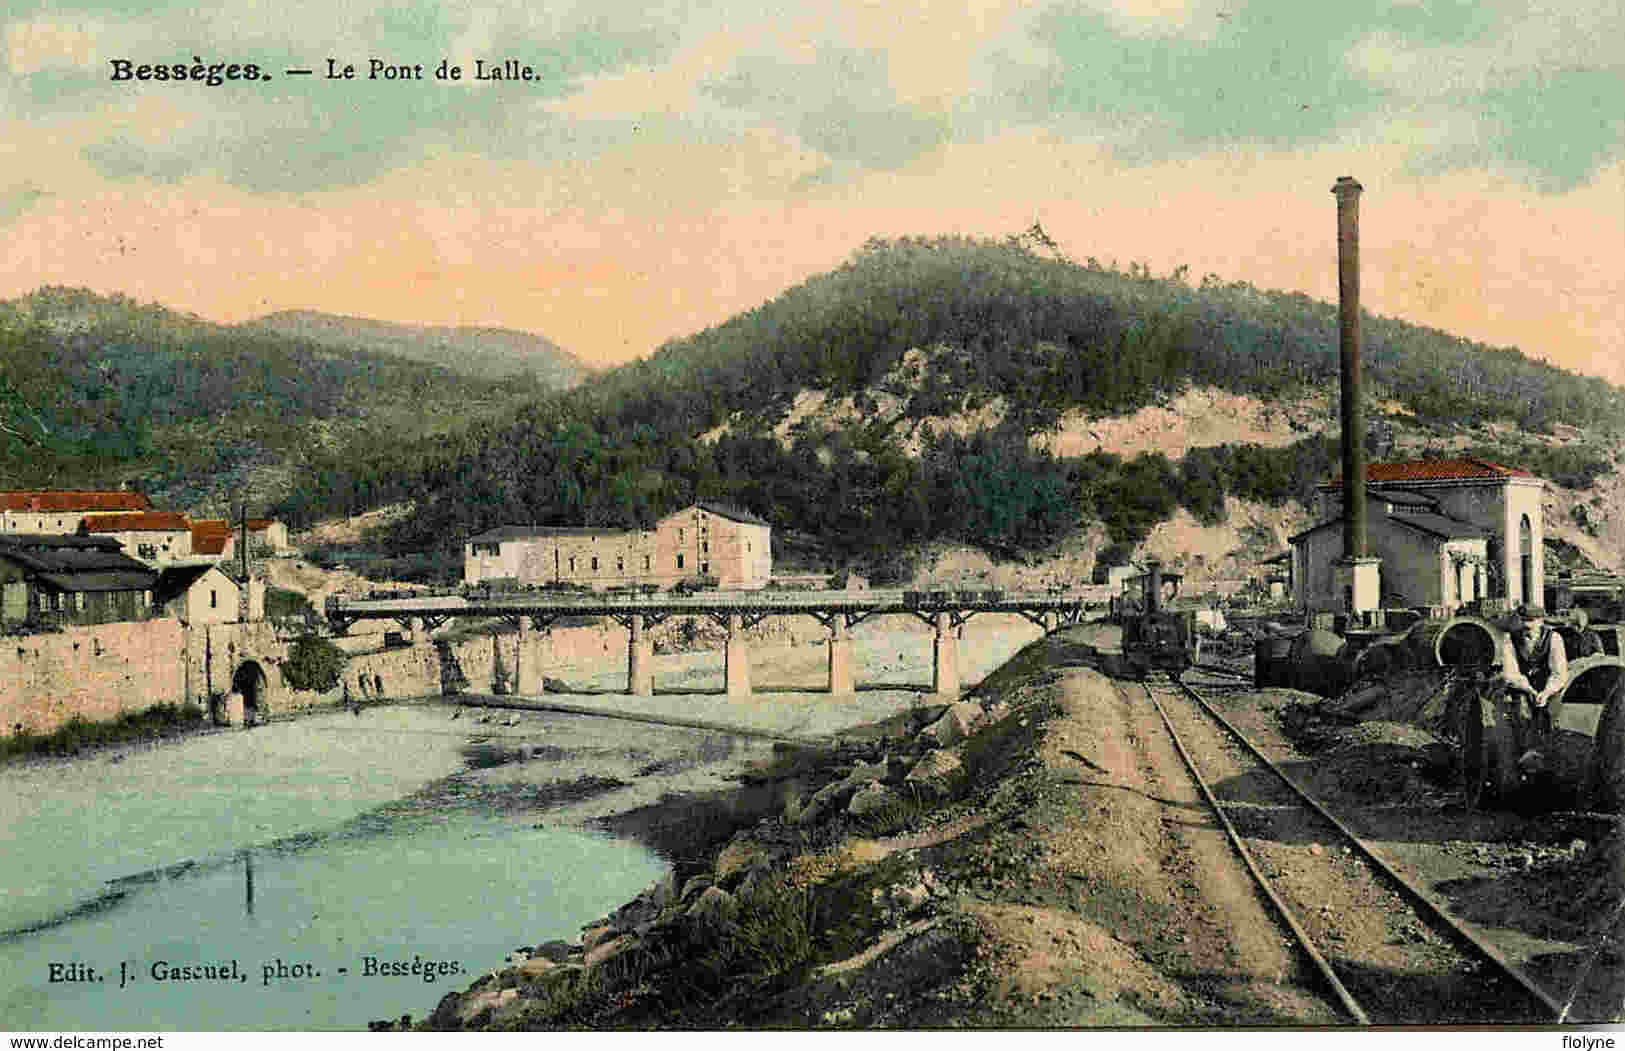 Pont de Lalle Bessèges